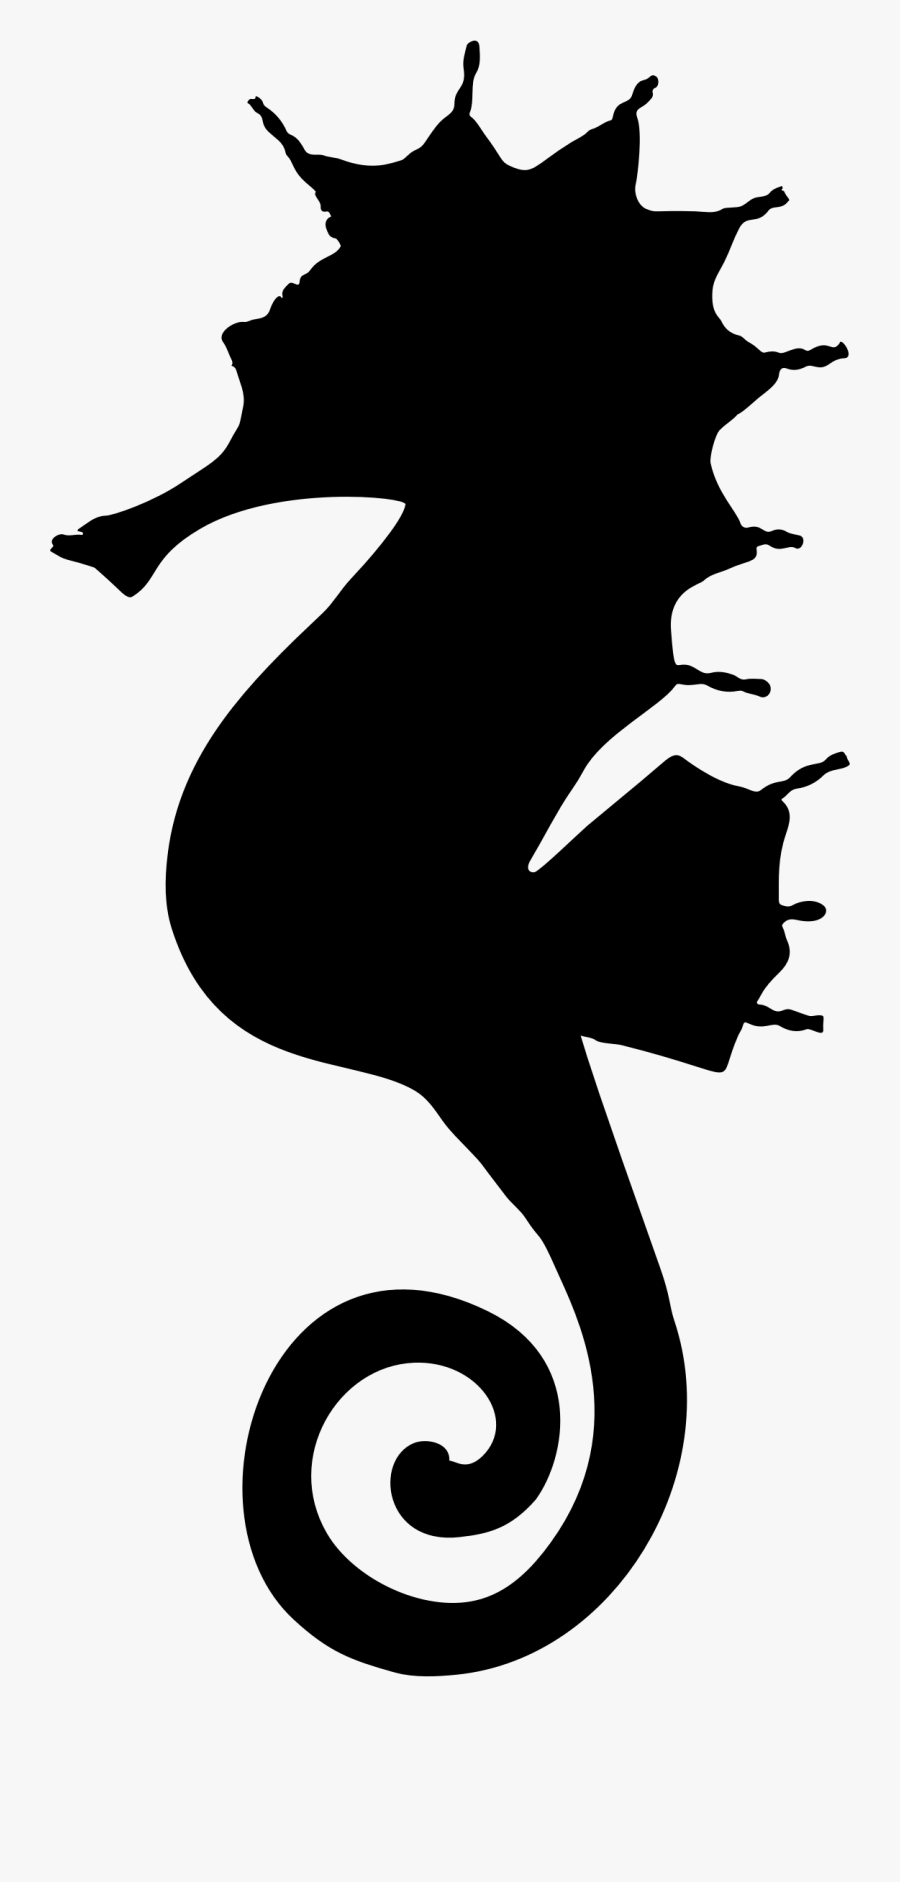 Transparent Stingray Clipart - Seahorse Silhouette Clip Art, Transparent Clipart